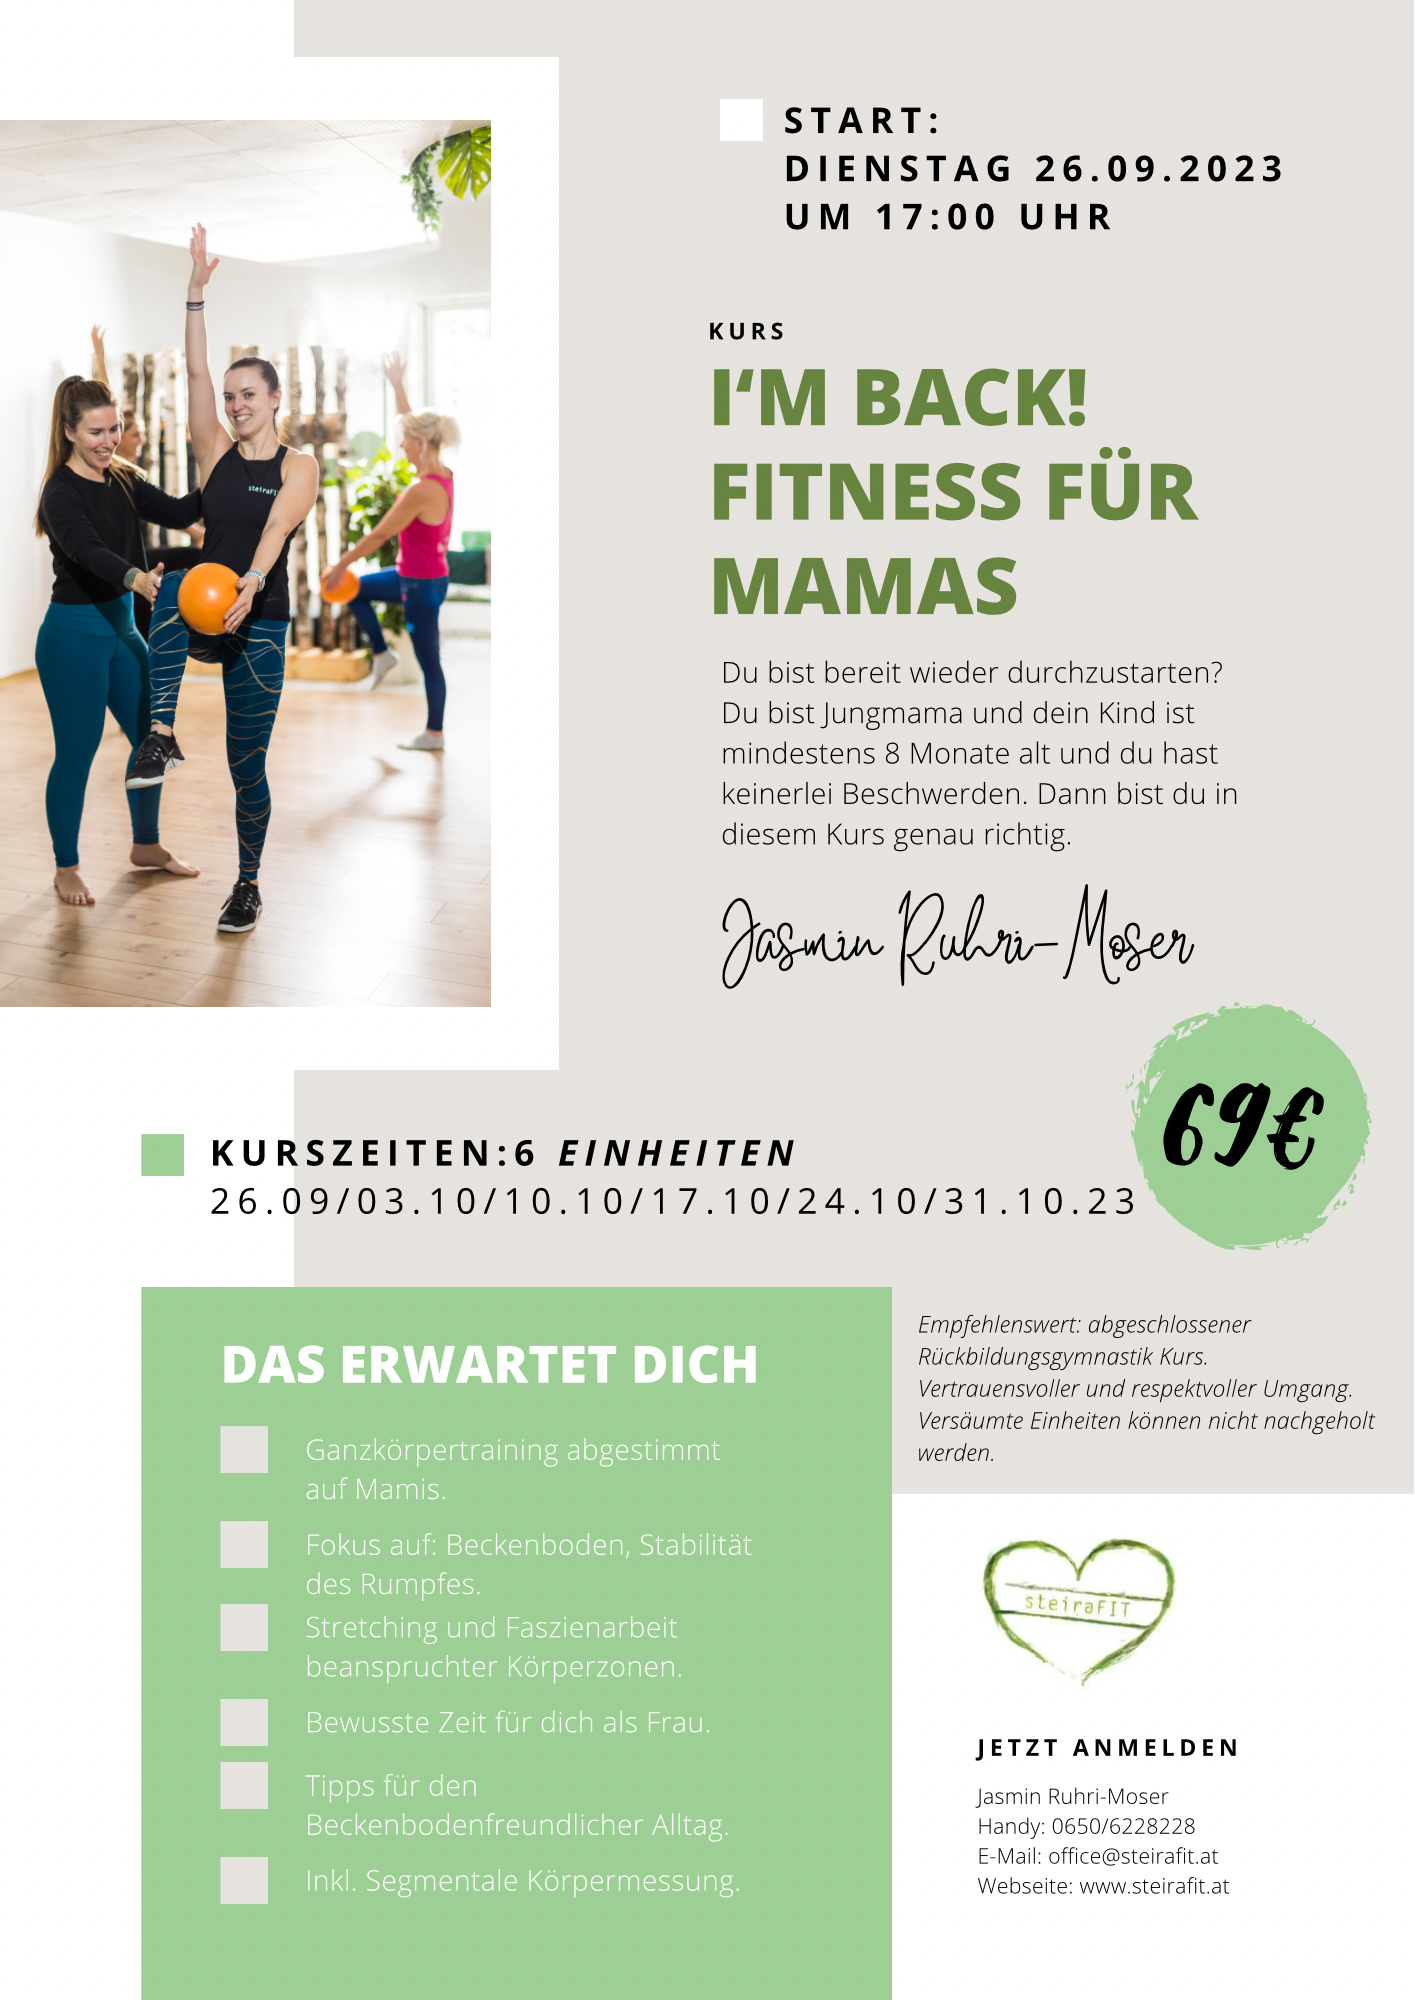 I‘m Back! Fitness für Mamas